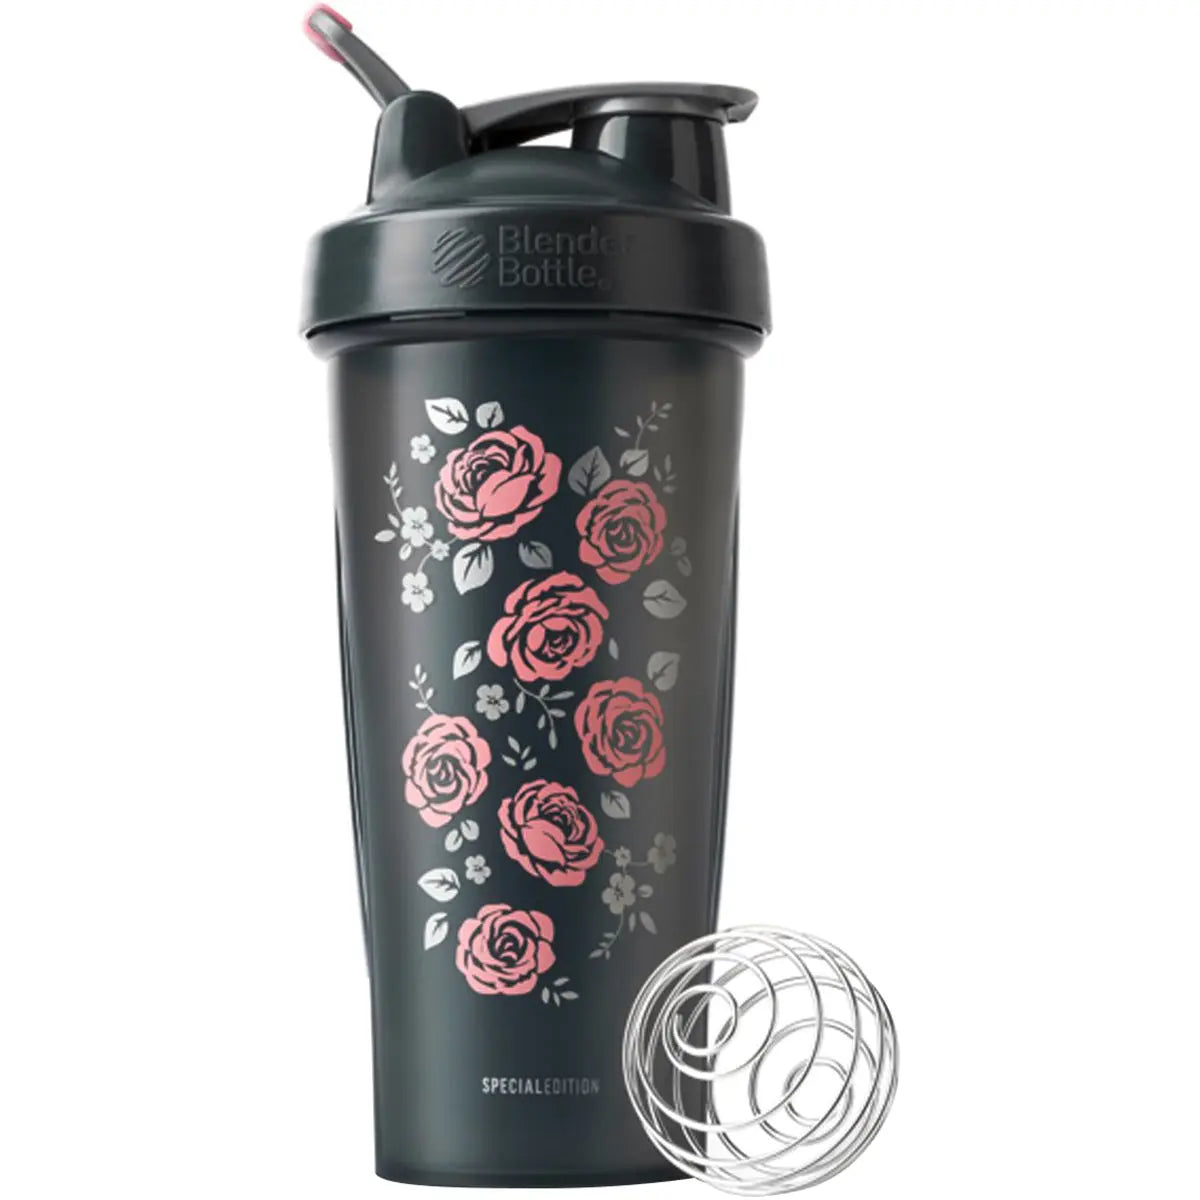 Blender Bottle Special Edition 28 oz. Shaker with Loop Top - Roses Blender Bottle